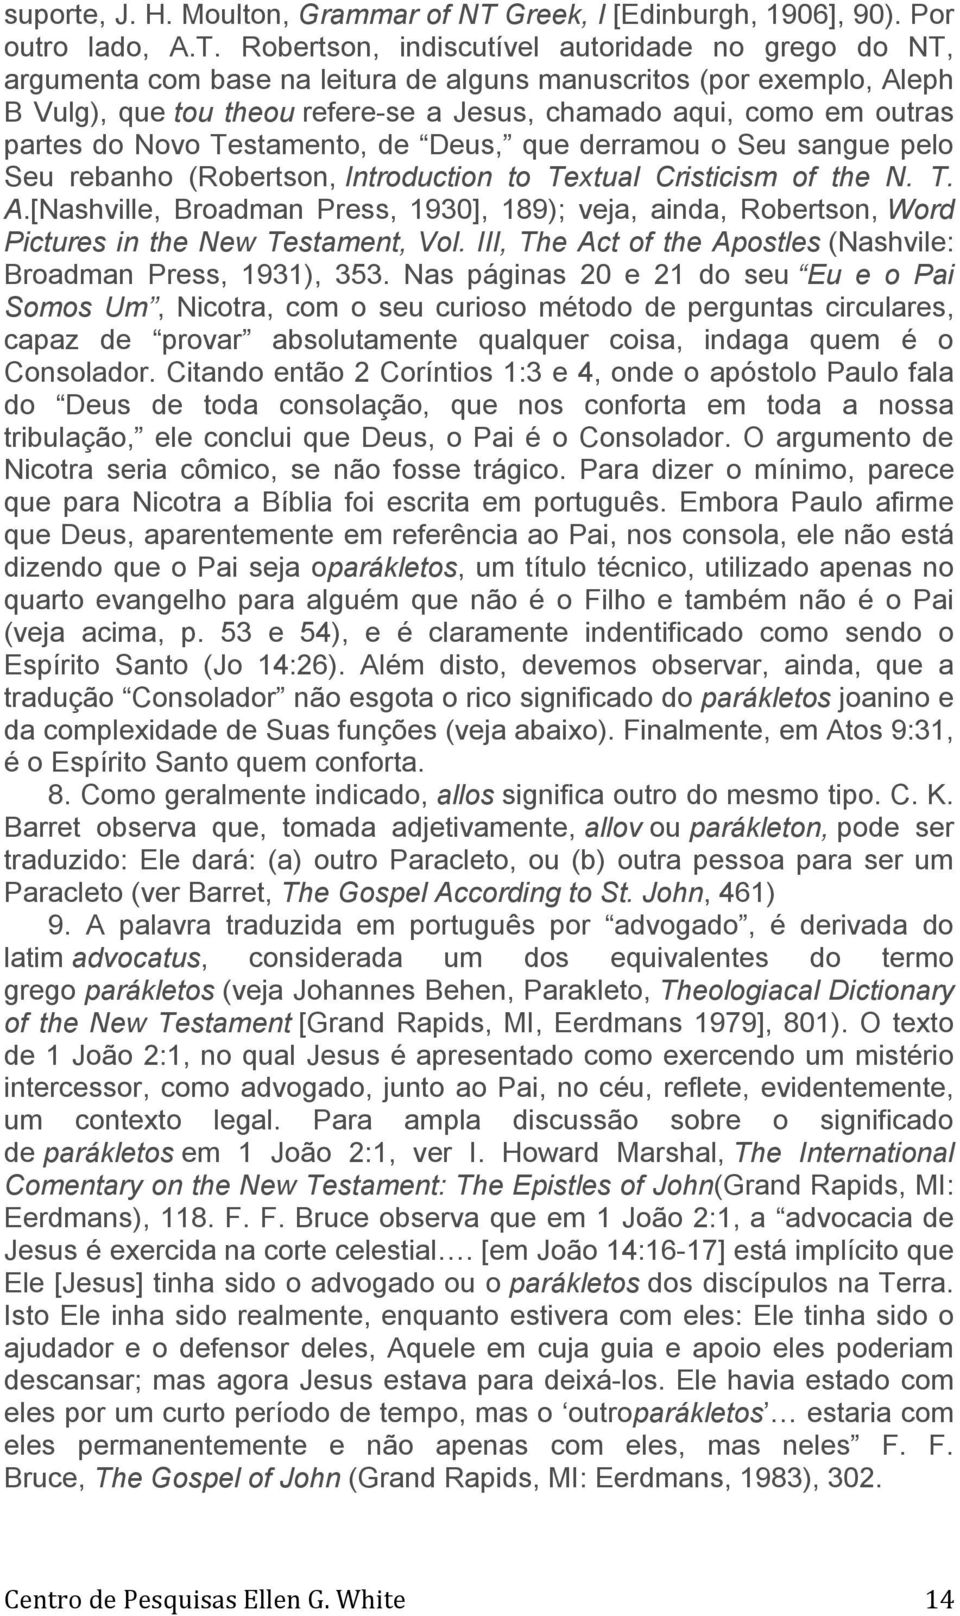 Robertson, indiscutível autoridade no grego do NT, argumenta com base na leitura de alguns manuscritos (por exemplo, Aleph B Vulg), que tou theou refere-se a Jesus, chamado aqui, como em outras